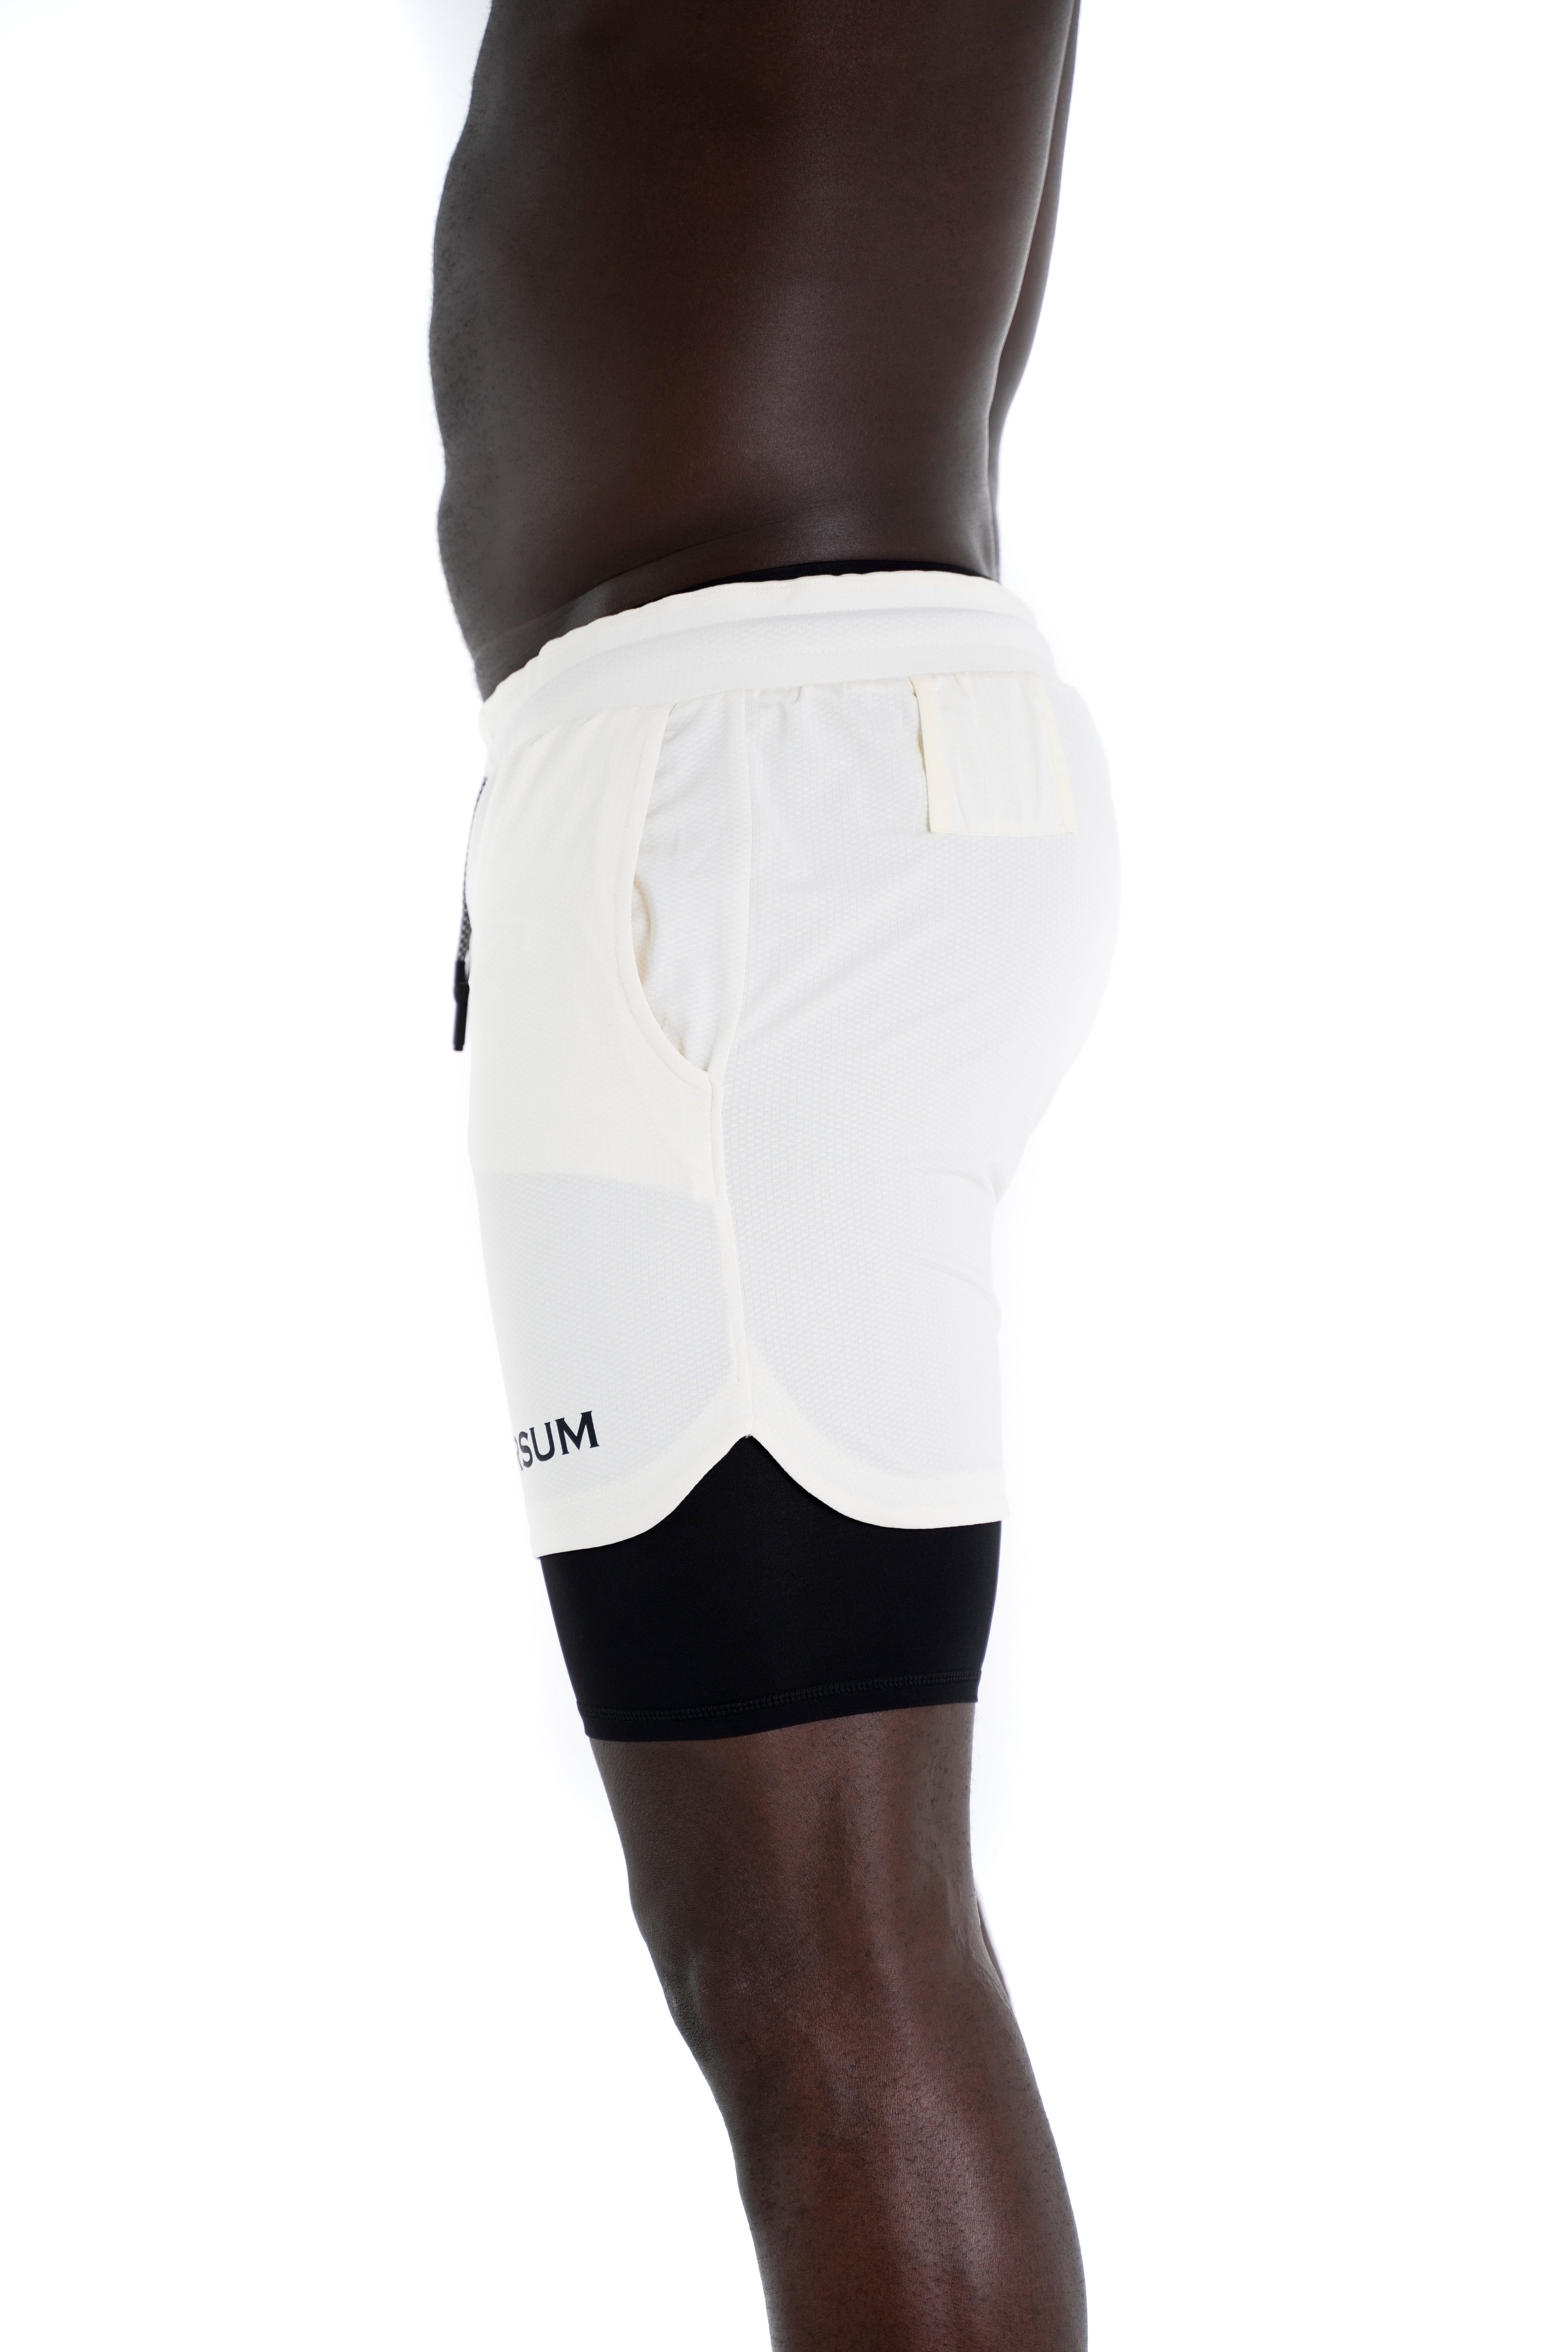 versteckter Sporthose Shorts mit mit Unterziehhose Sportwear funktioneller Kurze Universum weiß Handytasche Hose